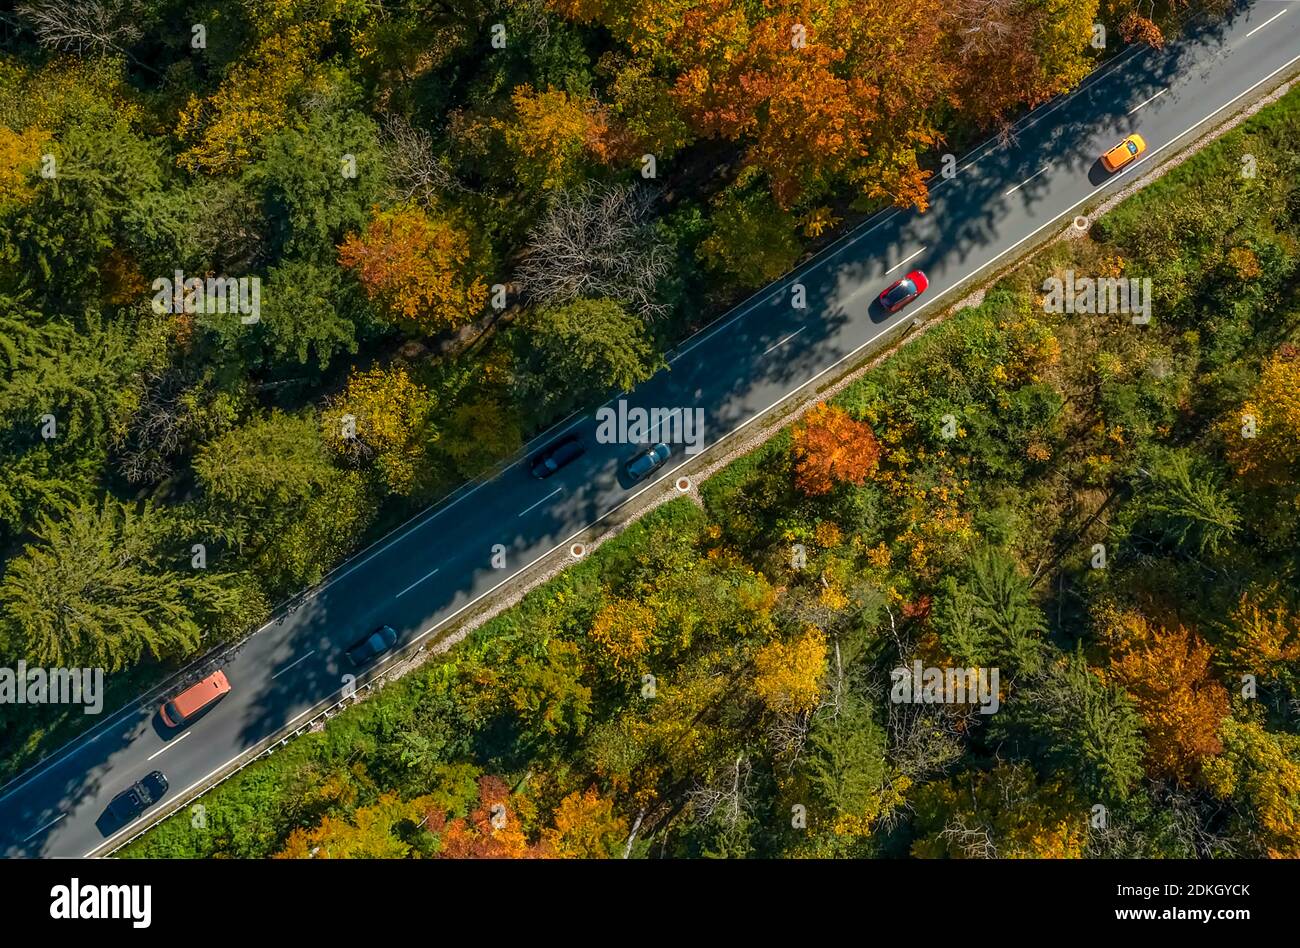 Magnifiques couleurs de la forêt d'automne traversée par une diagonale route asphaltée avec voitures de conduite Banque D'Images